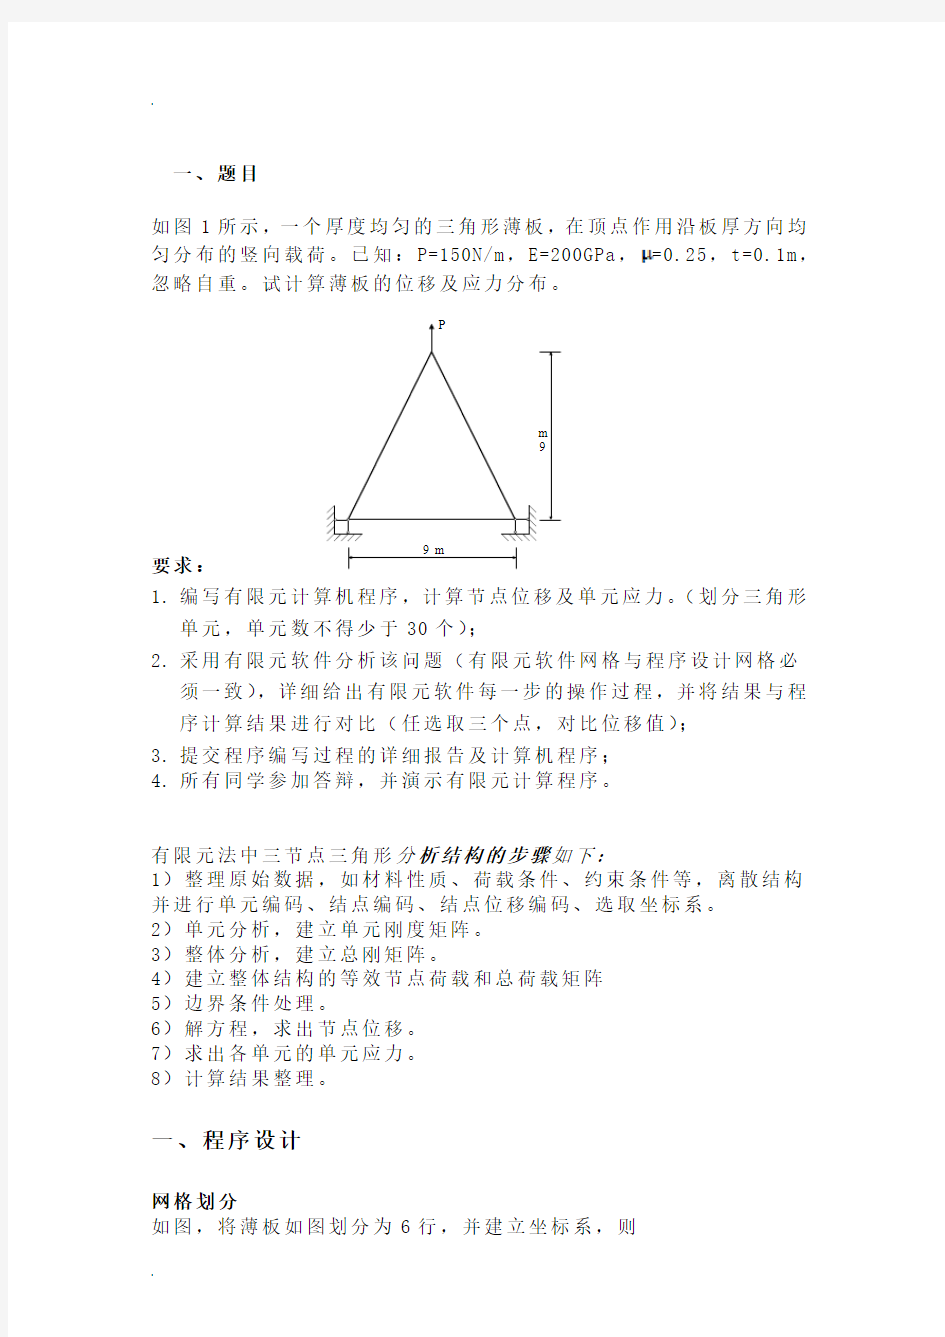 平面三角形单元有限元程序设计